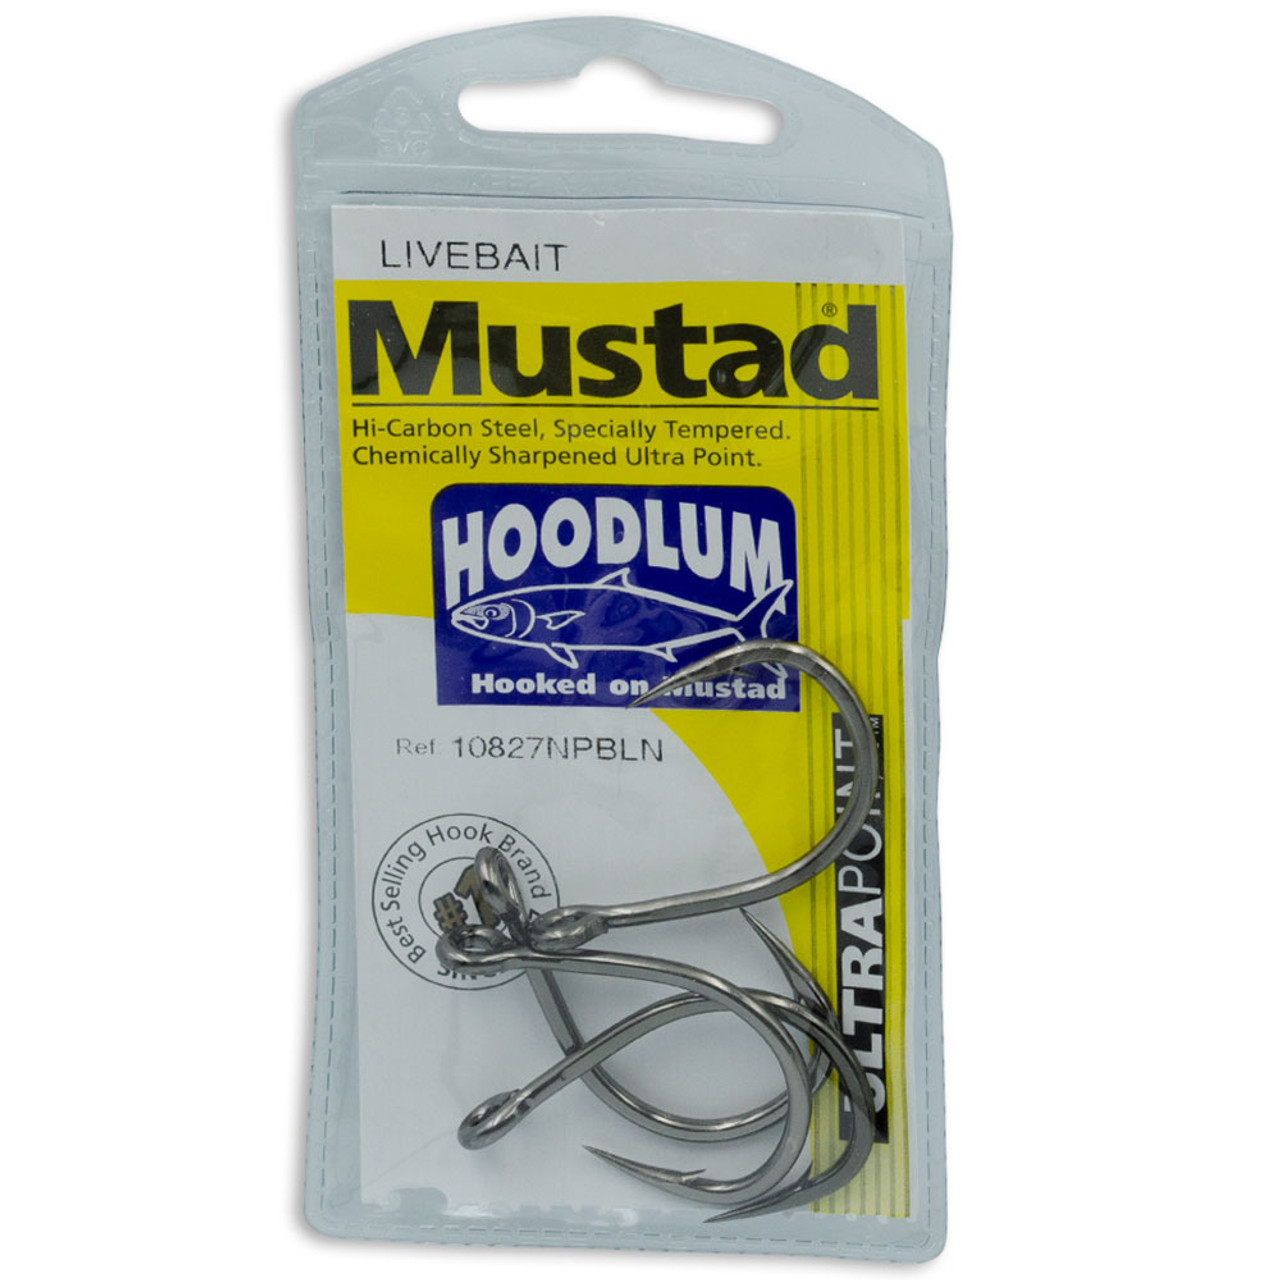 Mustad Hoodlum Live Bait Fishing Hooks 7/0